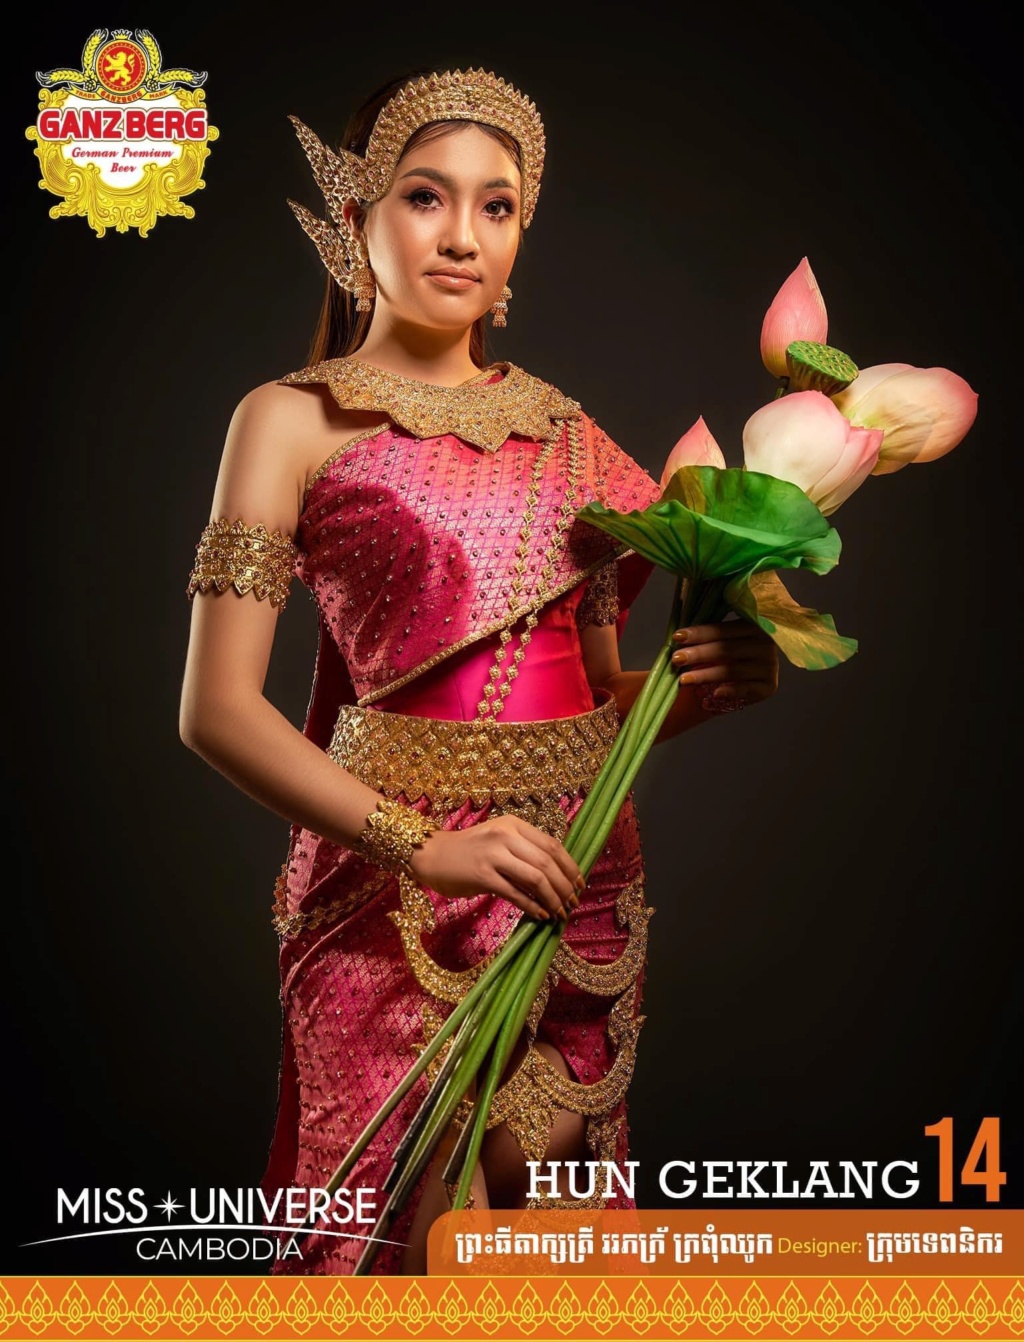 Miss Universe Cambodia 2021 is Ngin Marady 14102